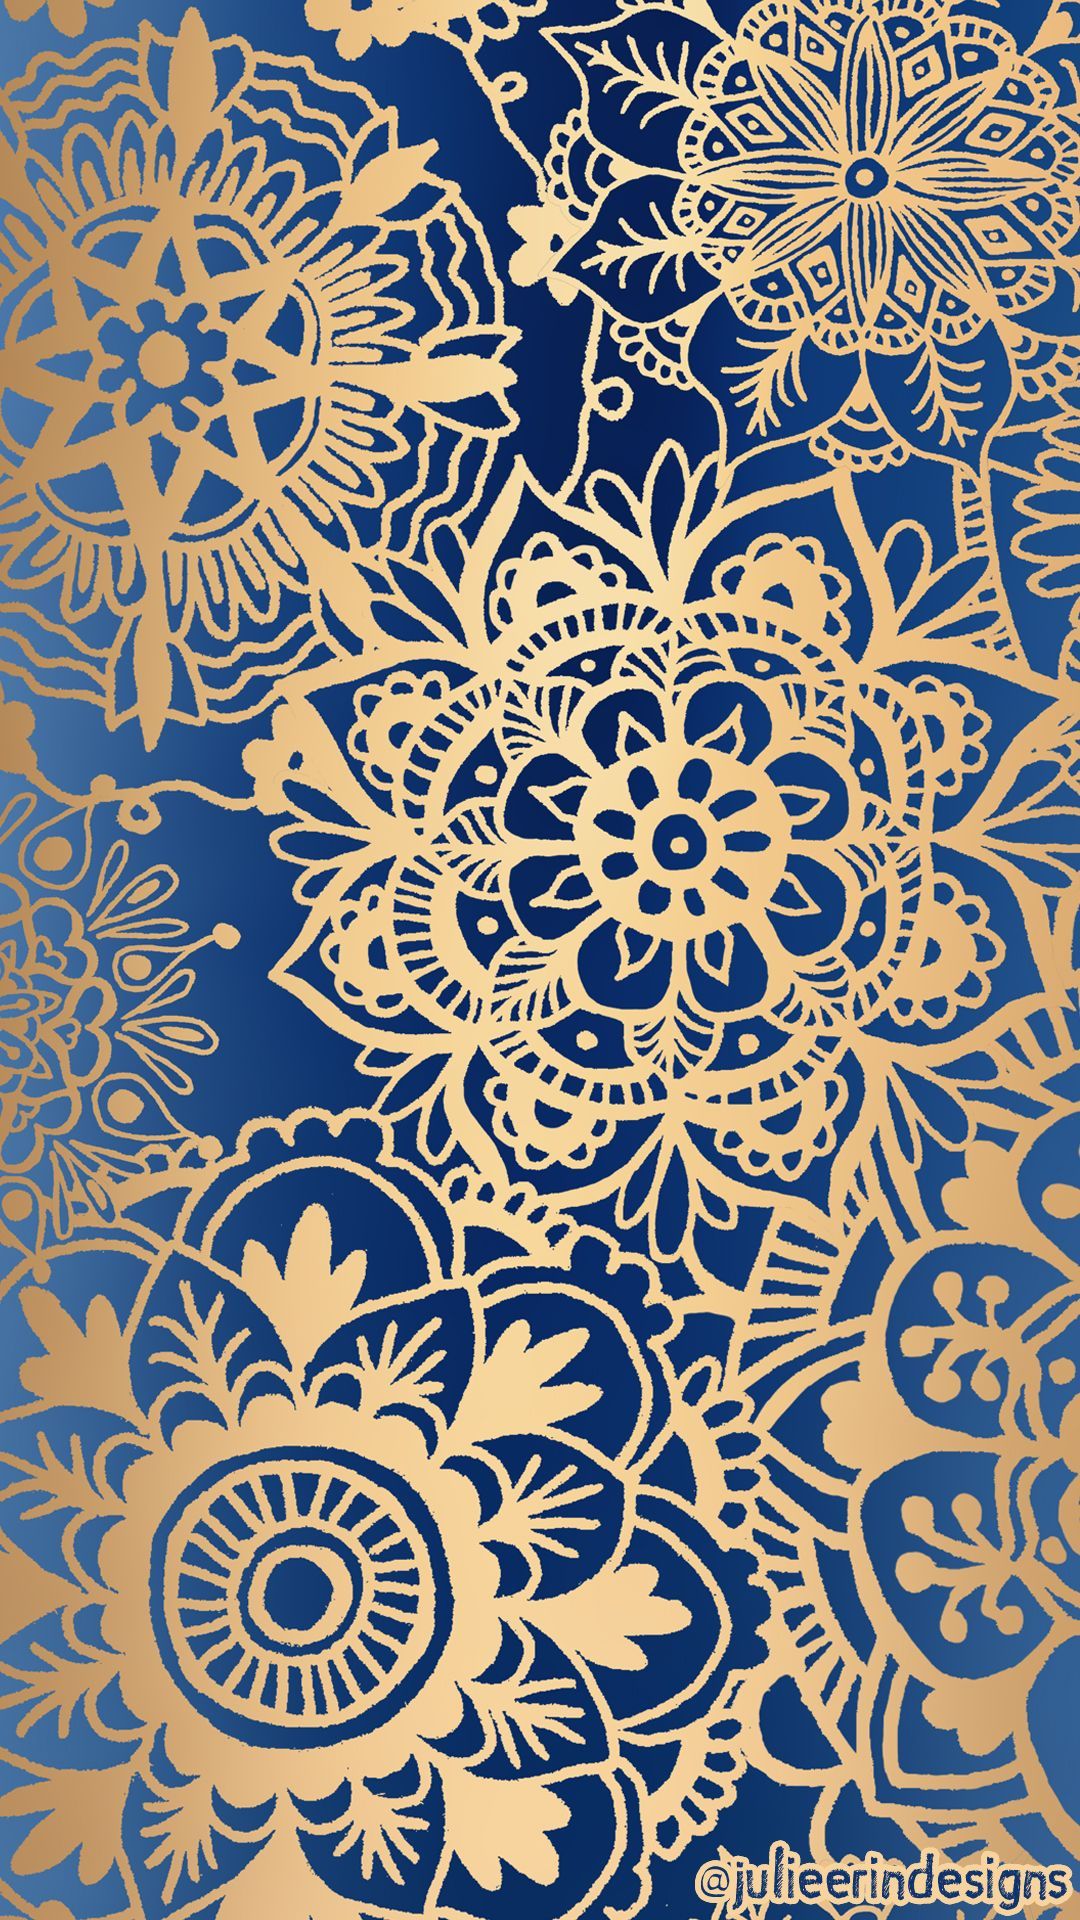 Free Mandala Mobile Phone Wallpaper. Mandala wallpaper, Cellphone wallpaper, Gold wallpaper